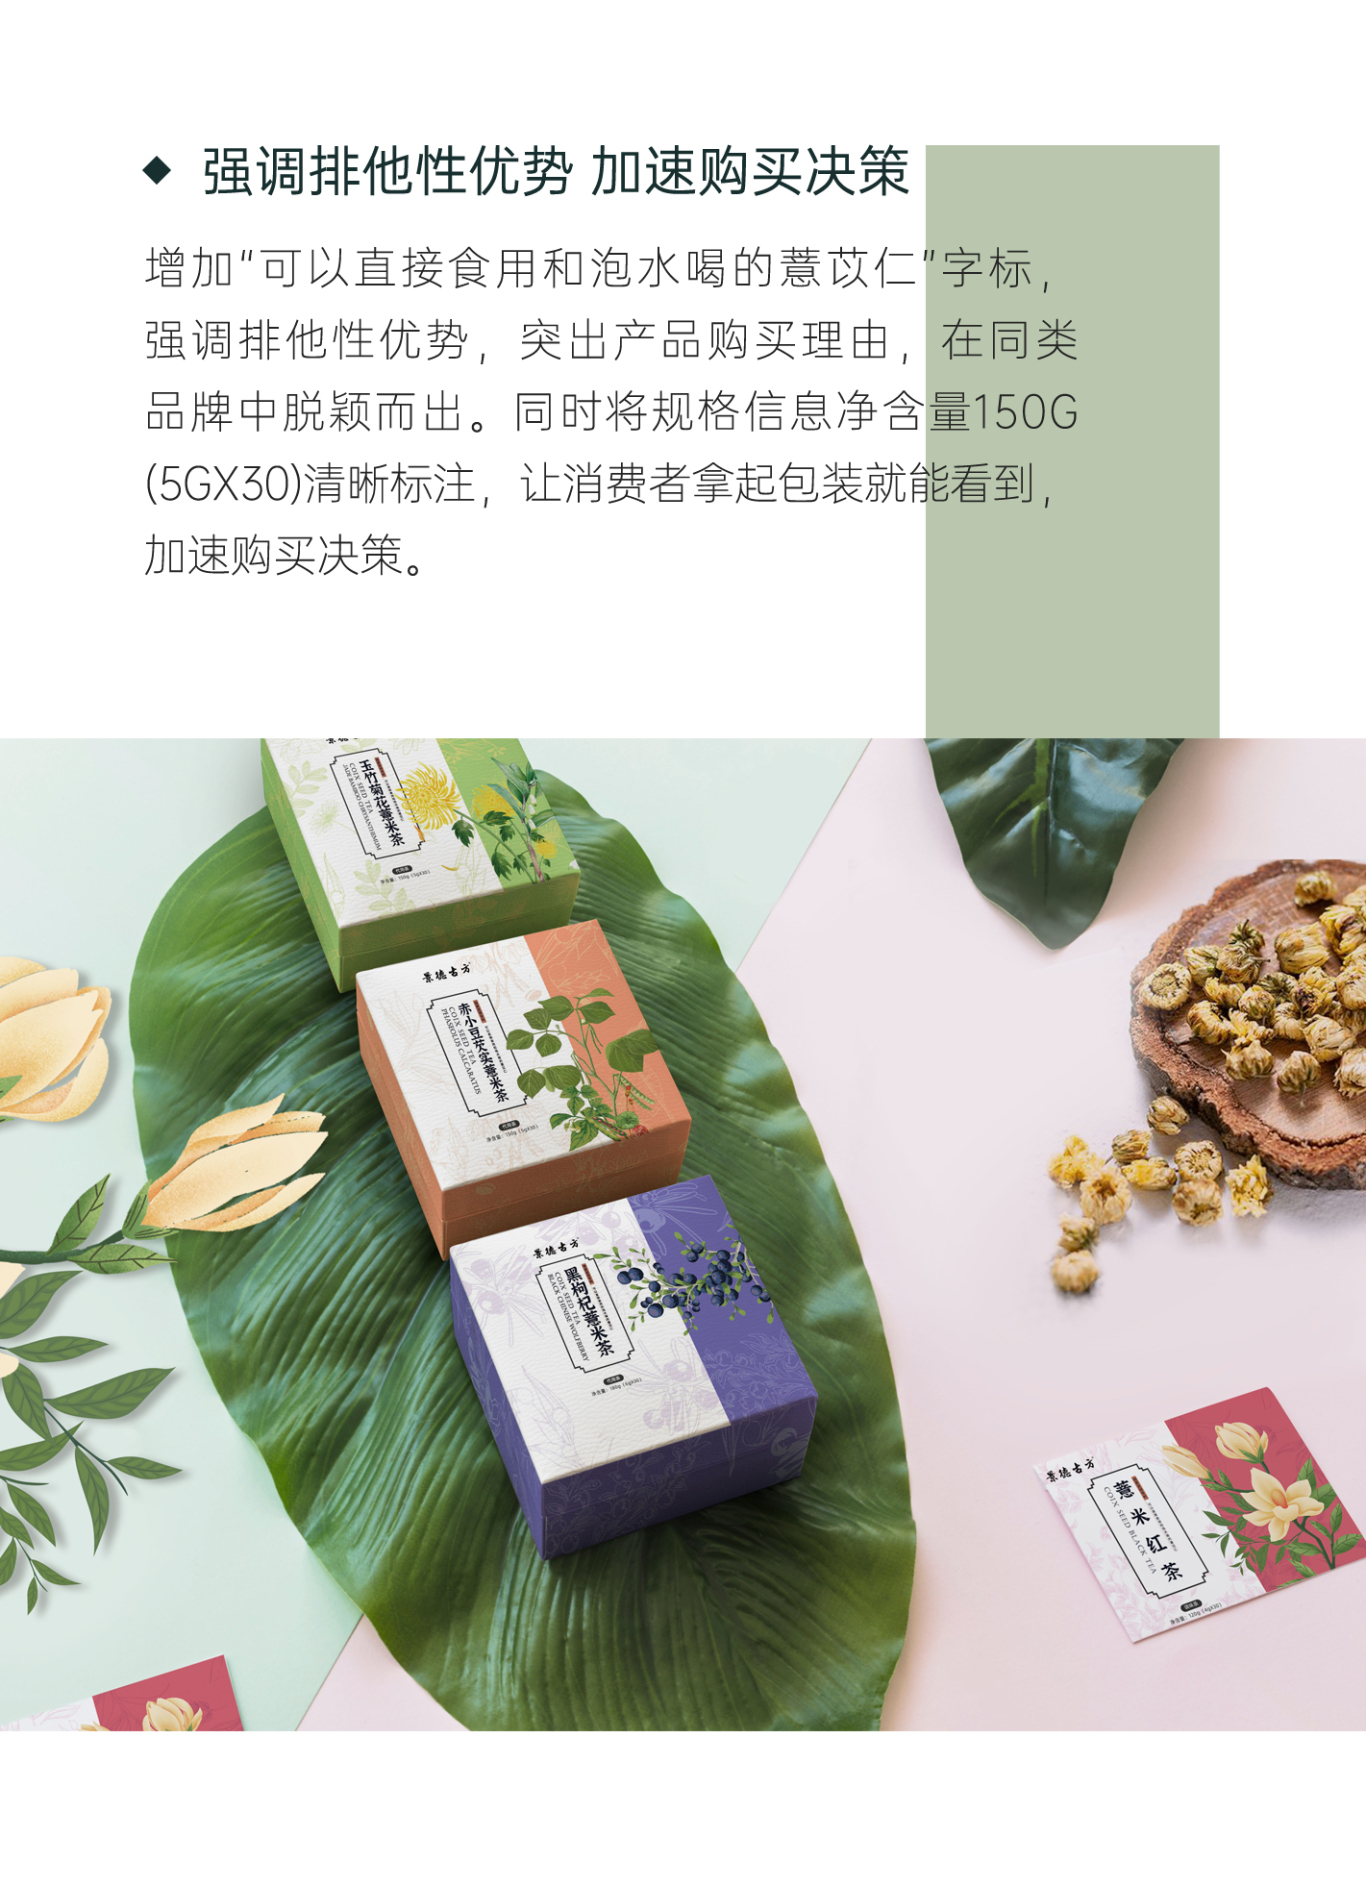 『景德古方』养生花茶系列包装设计图10